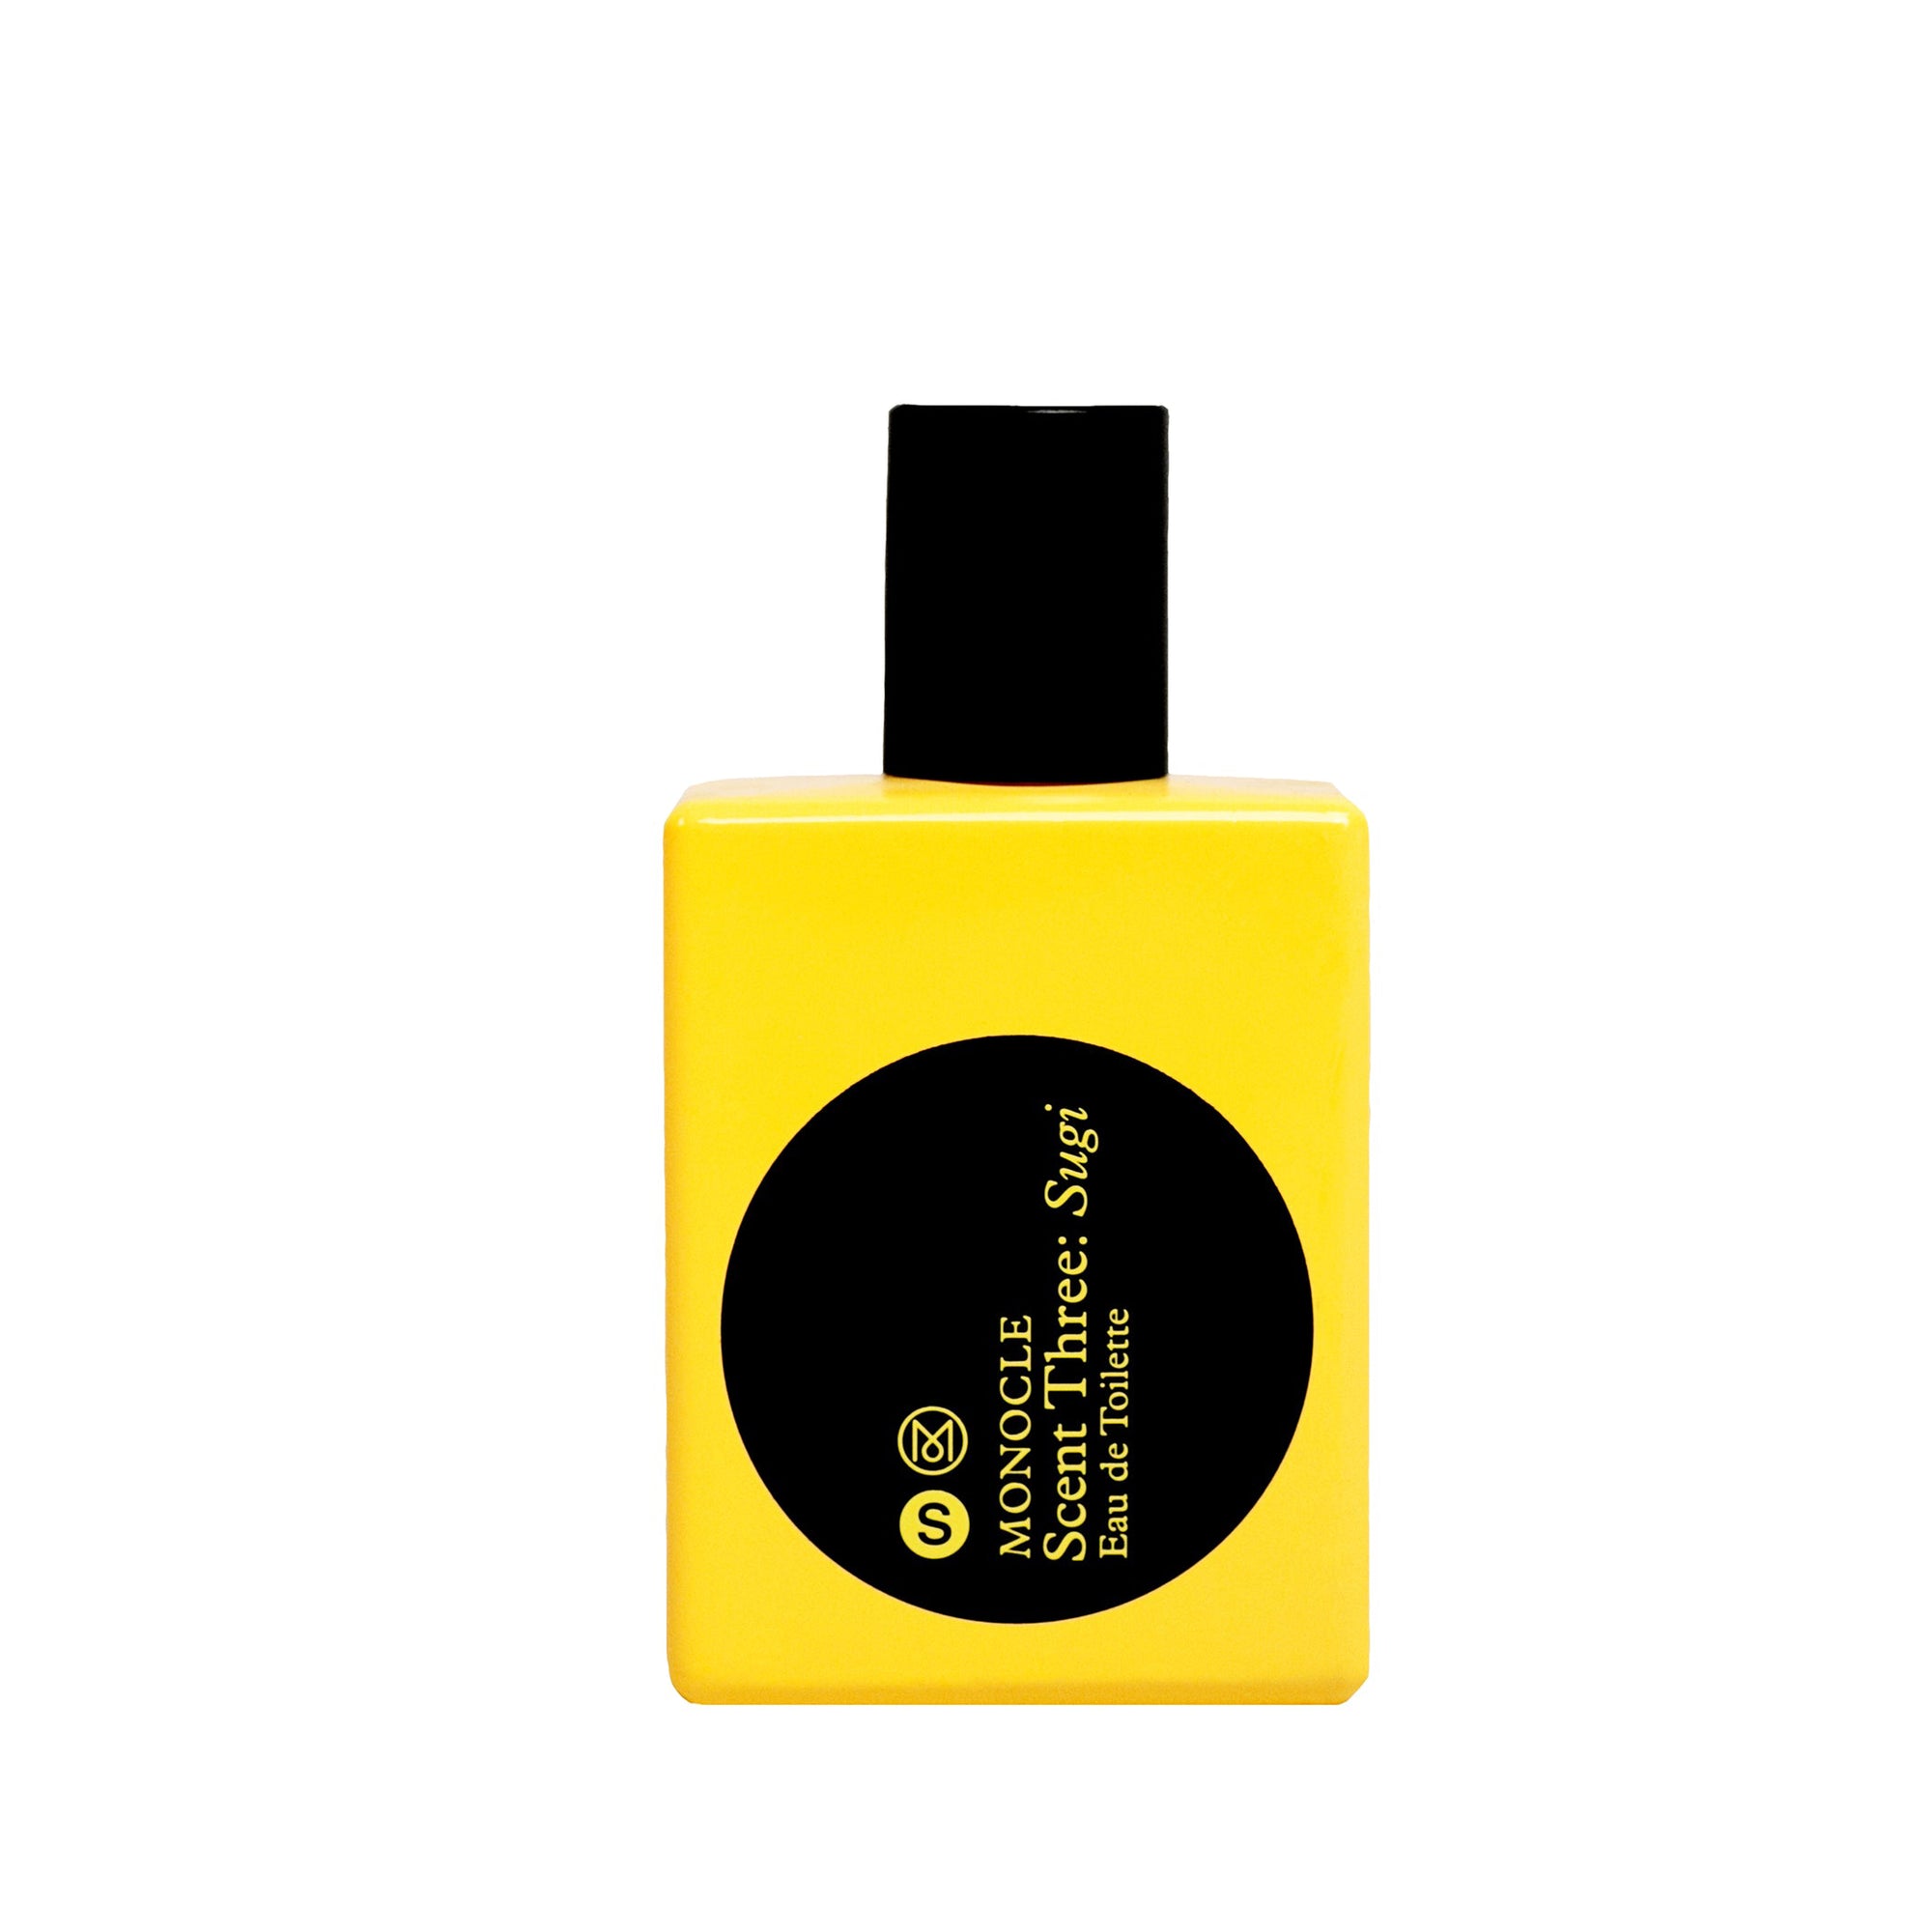 CDG Parfum - Monocle Scent Three Sugi Eau de Toilette - (50ml natural spray) view 1